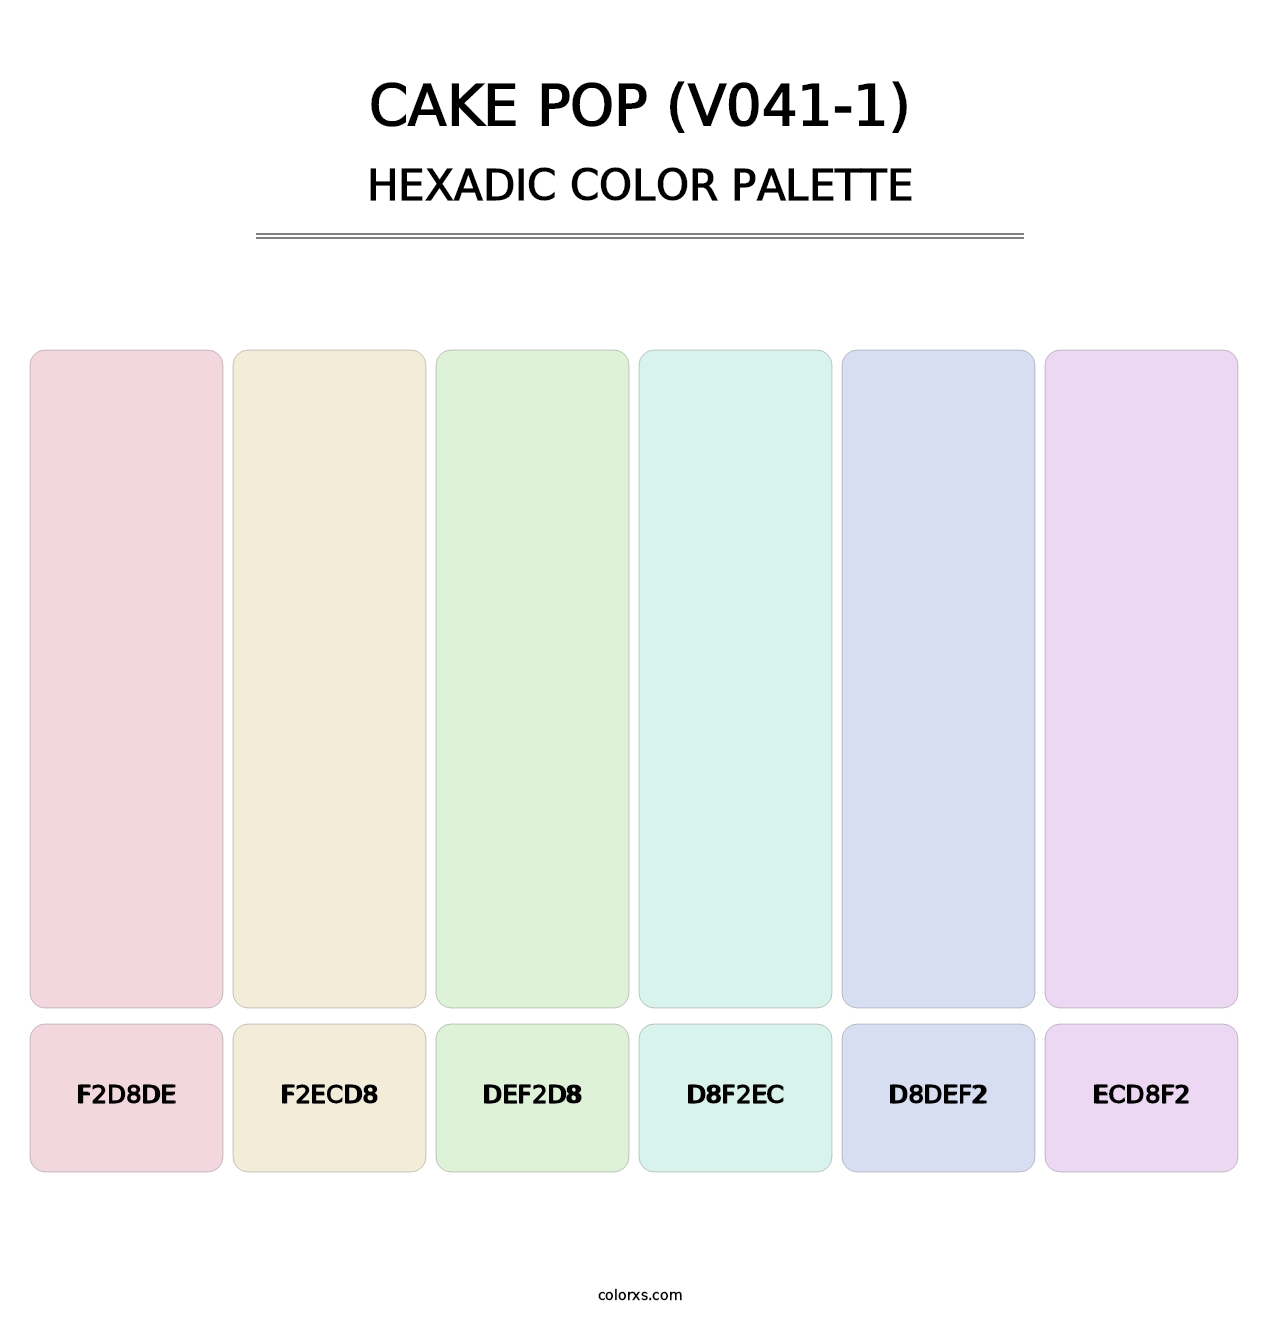 Cake Pop (V041-1) - Hexadic Color Palette